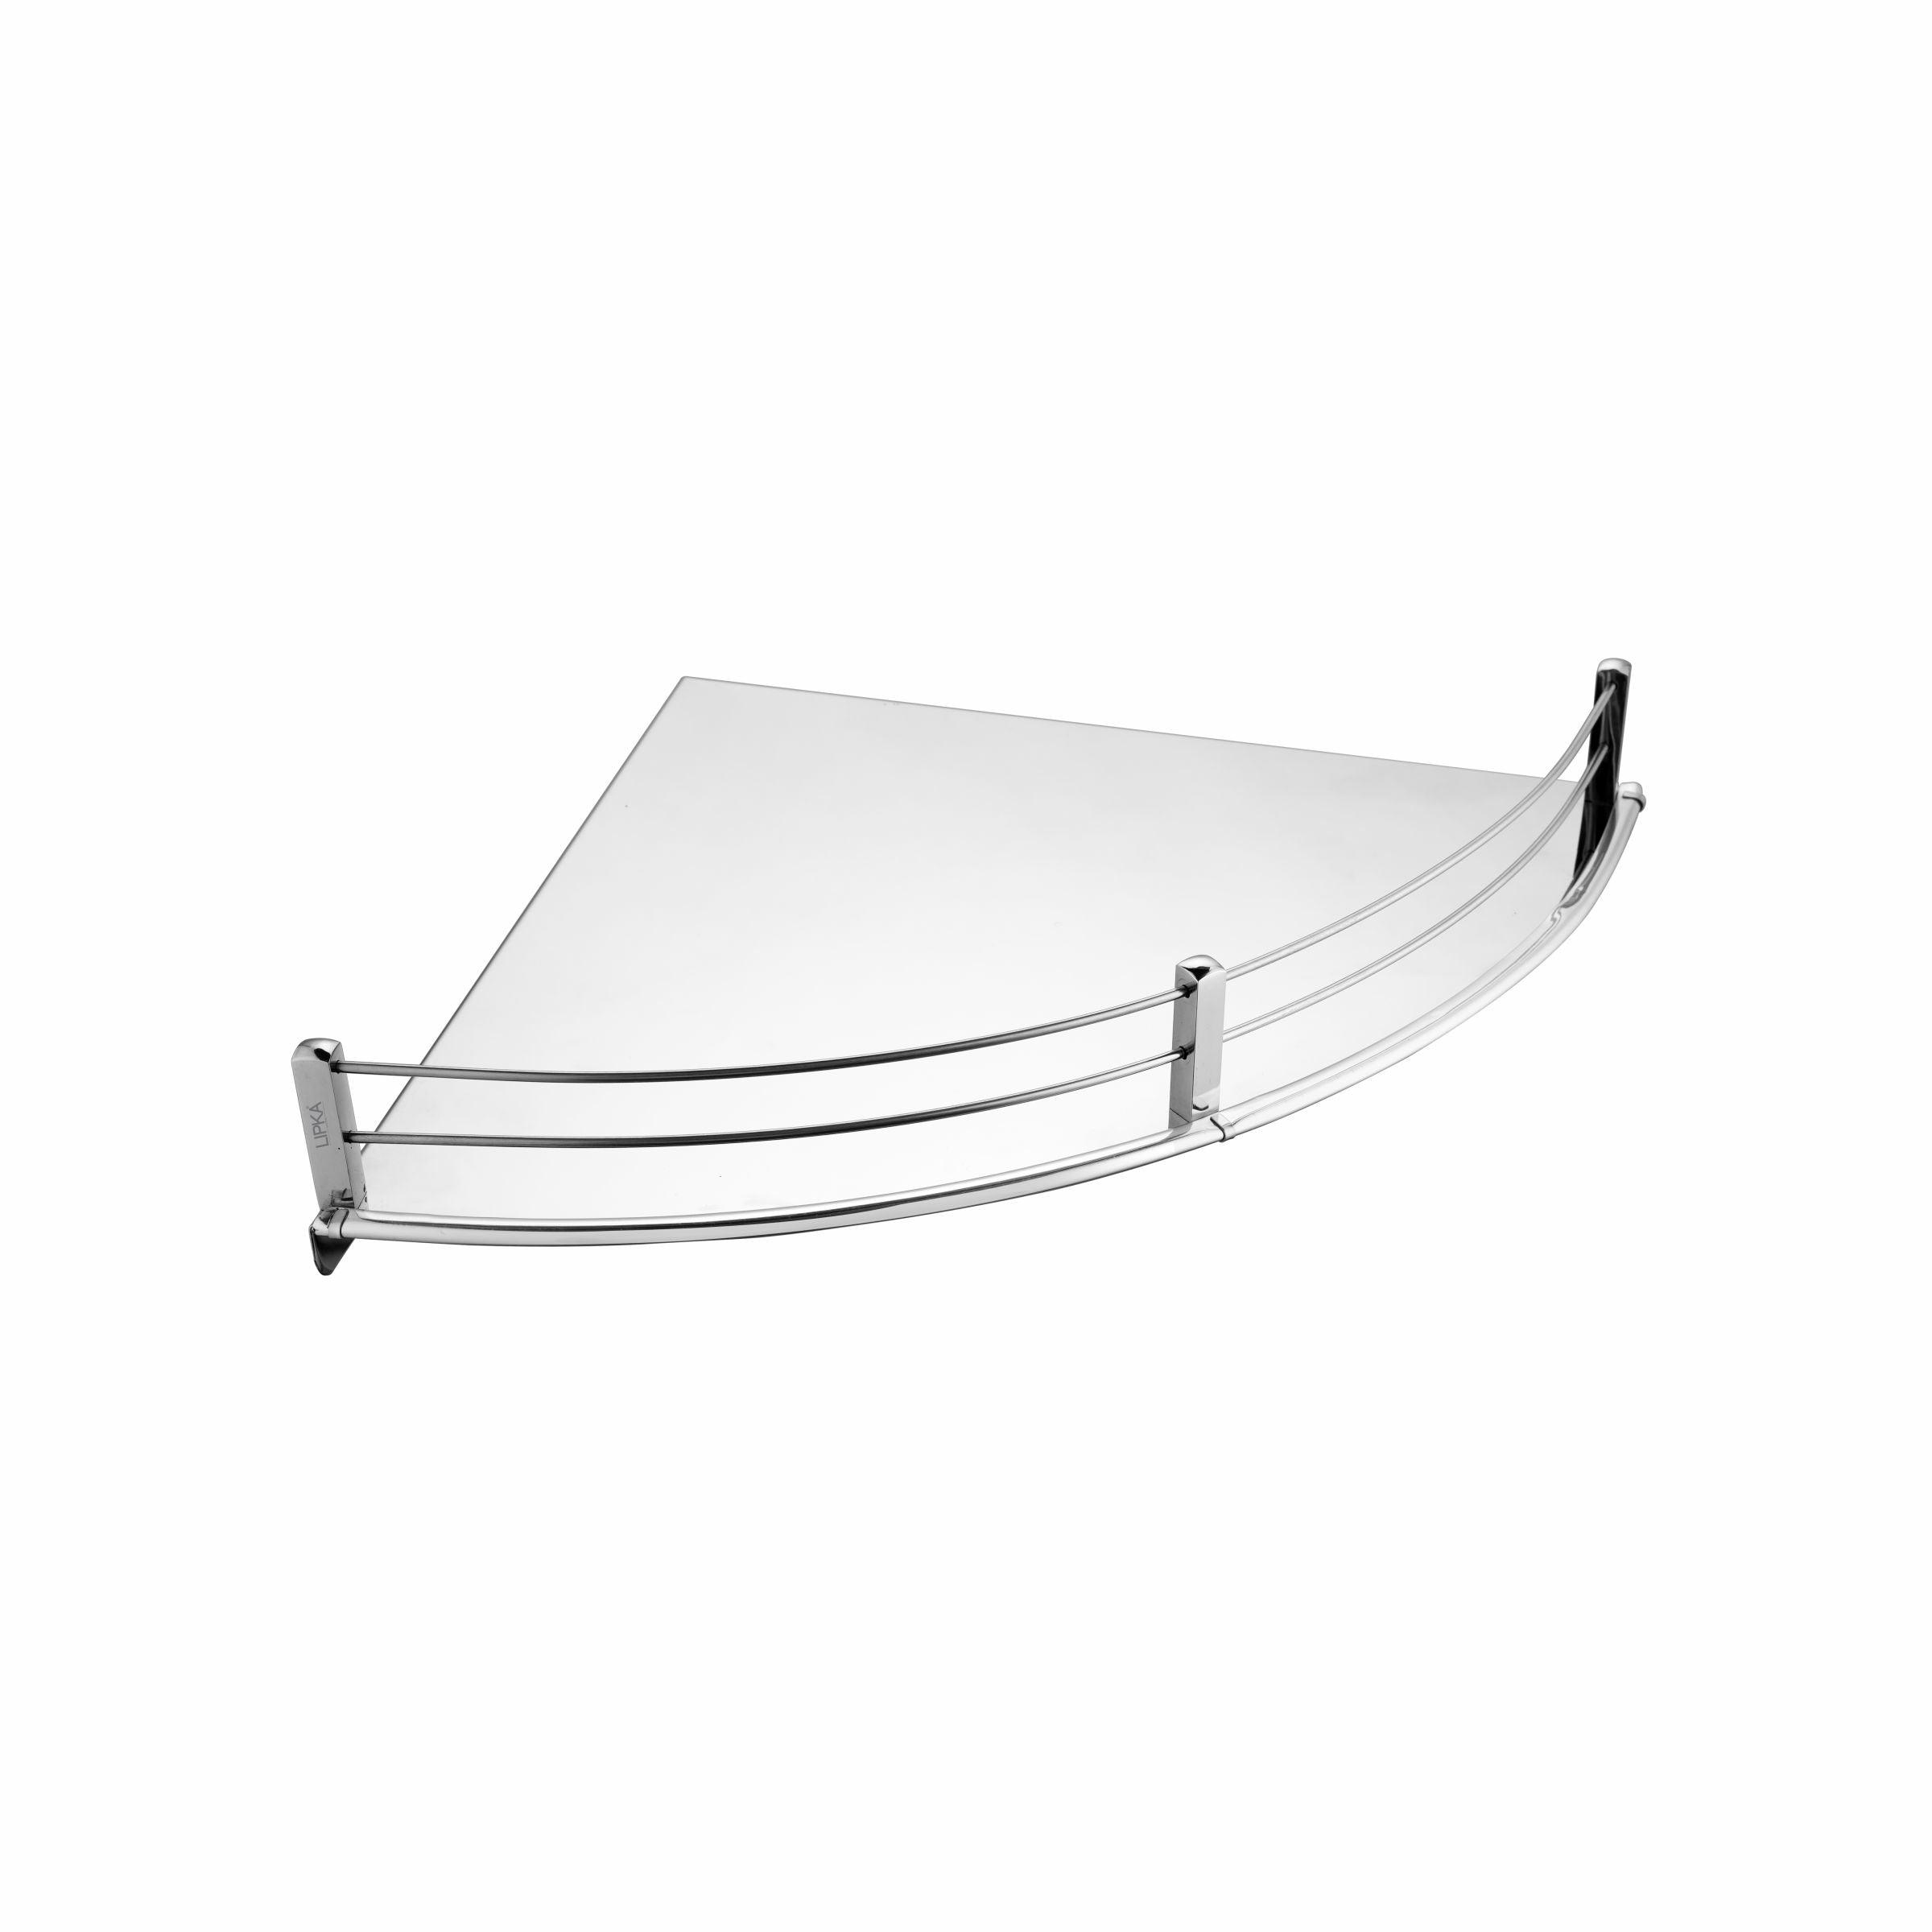 Supreme Round Corner Shelf Tray (12 x 12 Inches) - LIPKA - Lipka Home